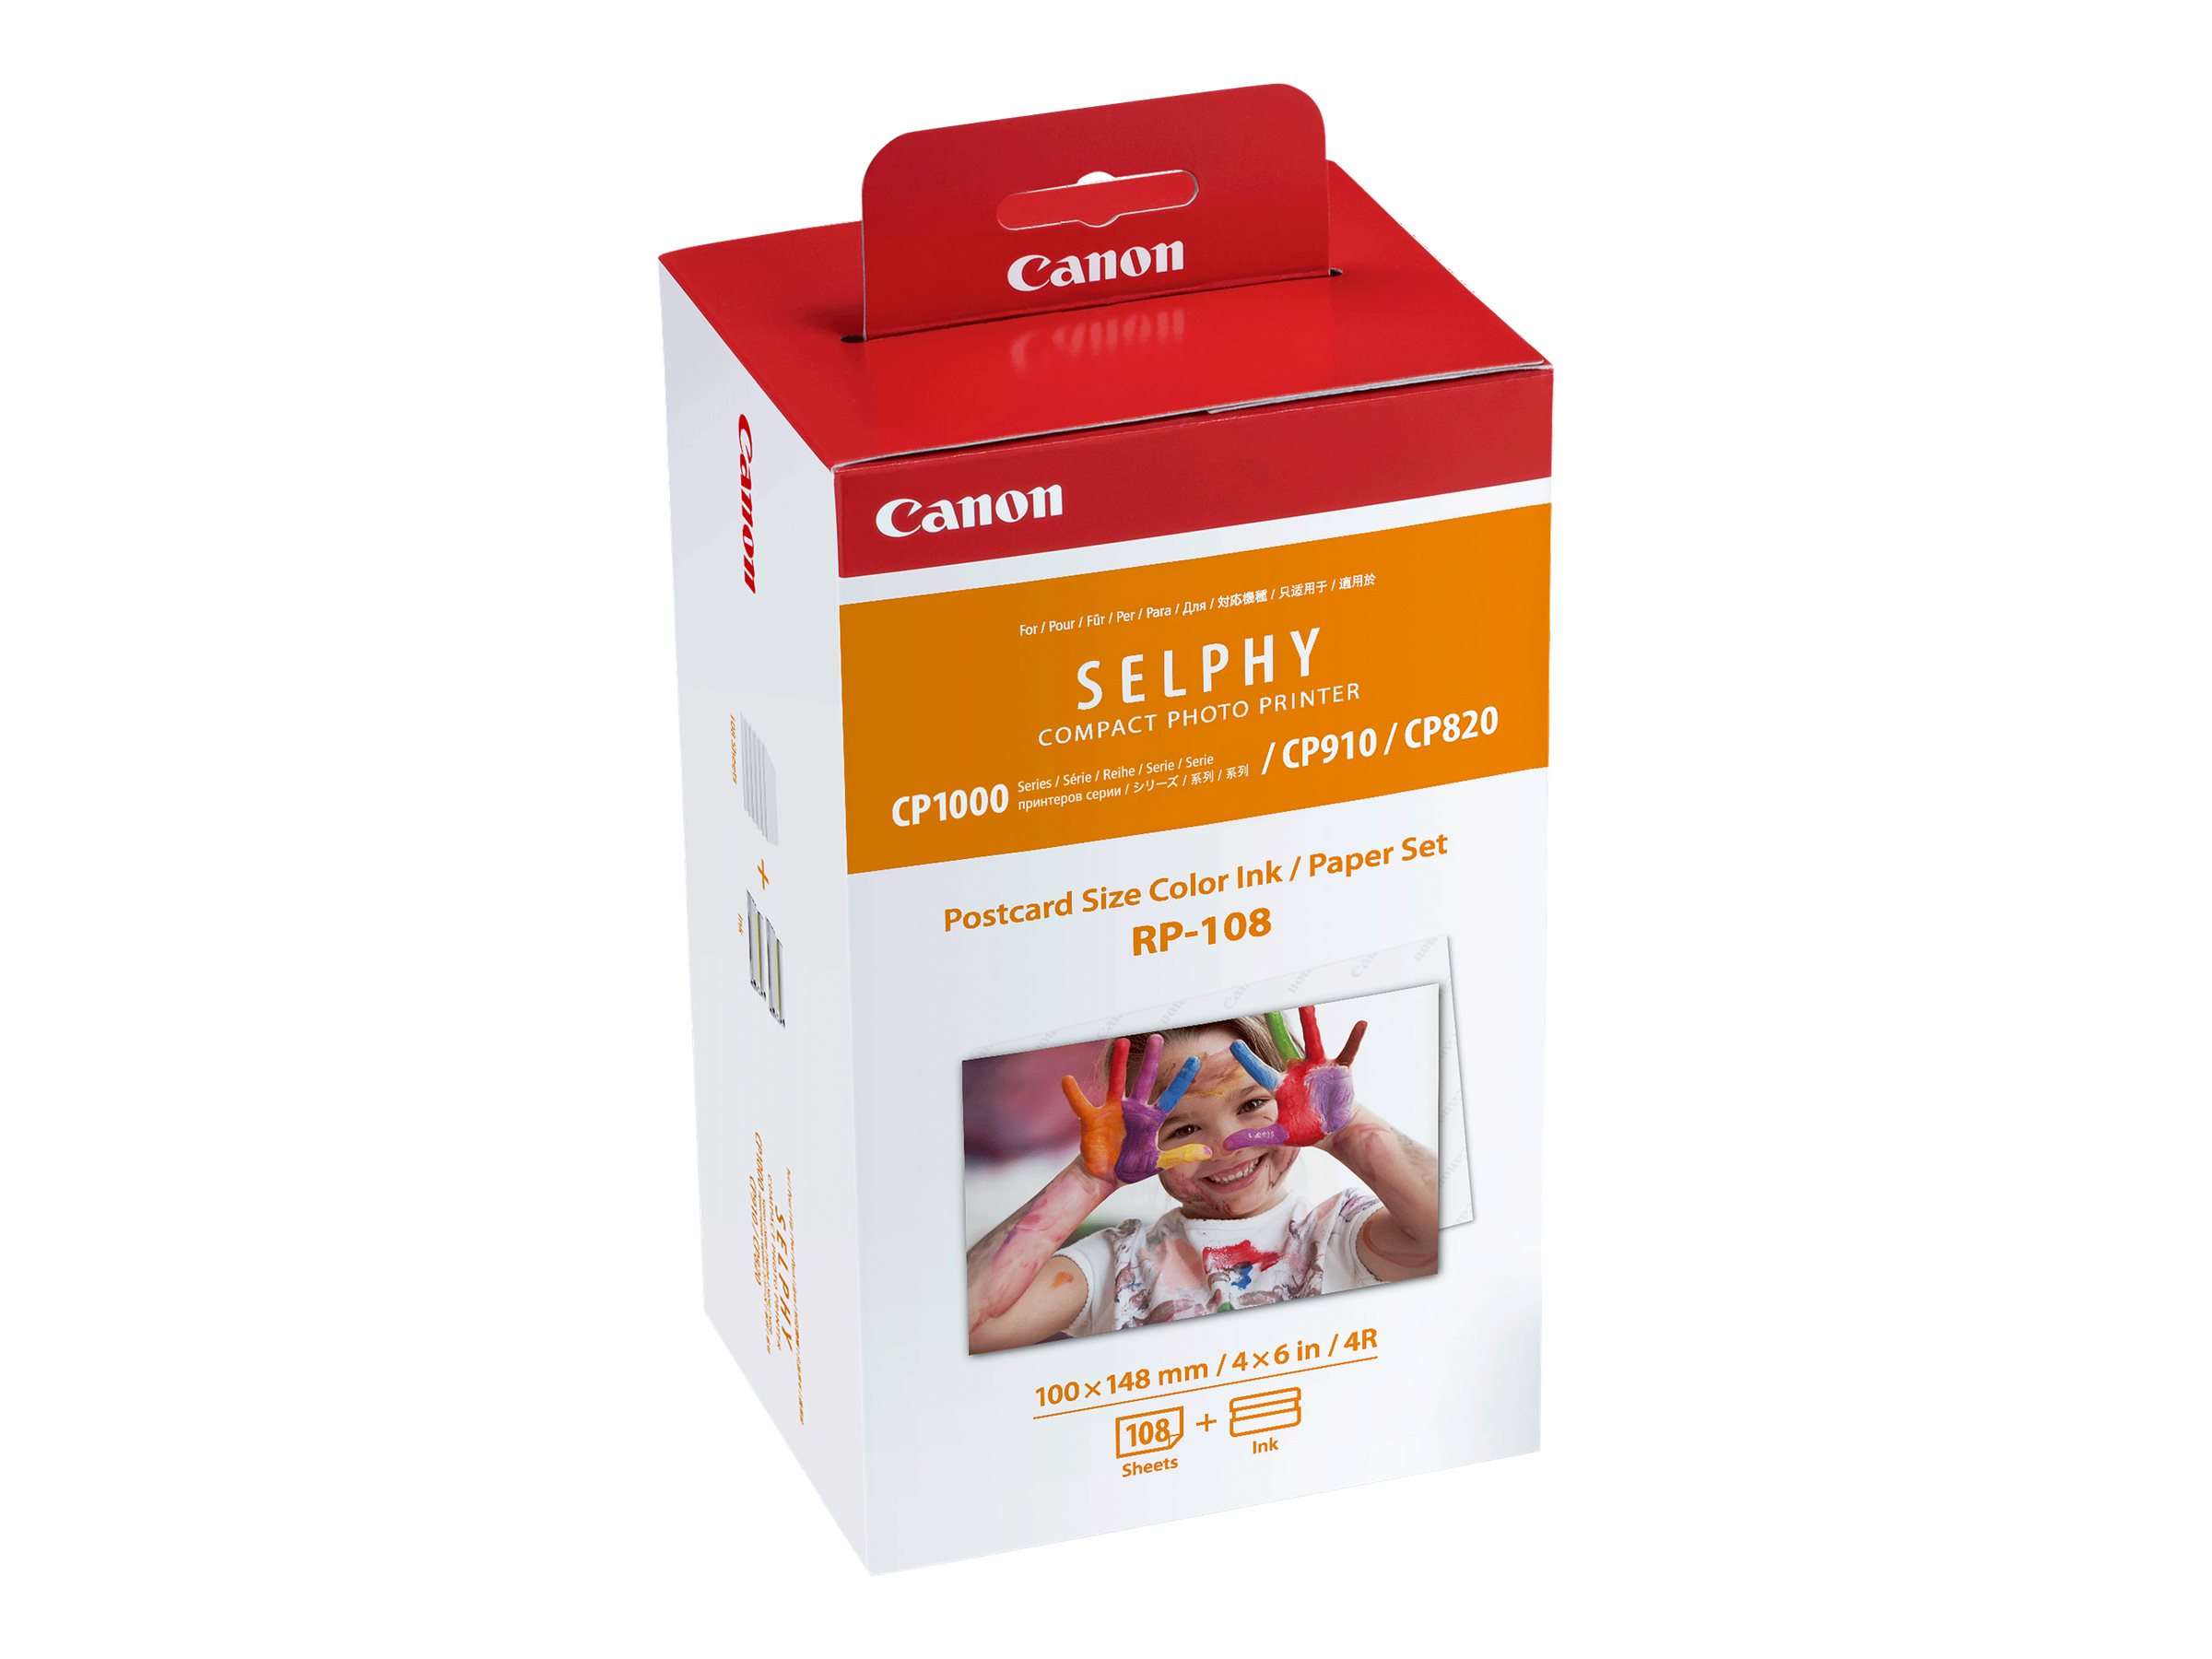 Canon RP-108 kit encre couleur pour imprimante Selphy au format carte  postale (10cm x 14,8cm) origine canon garantie, 108 feuilles